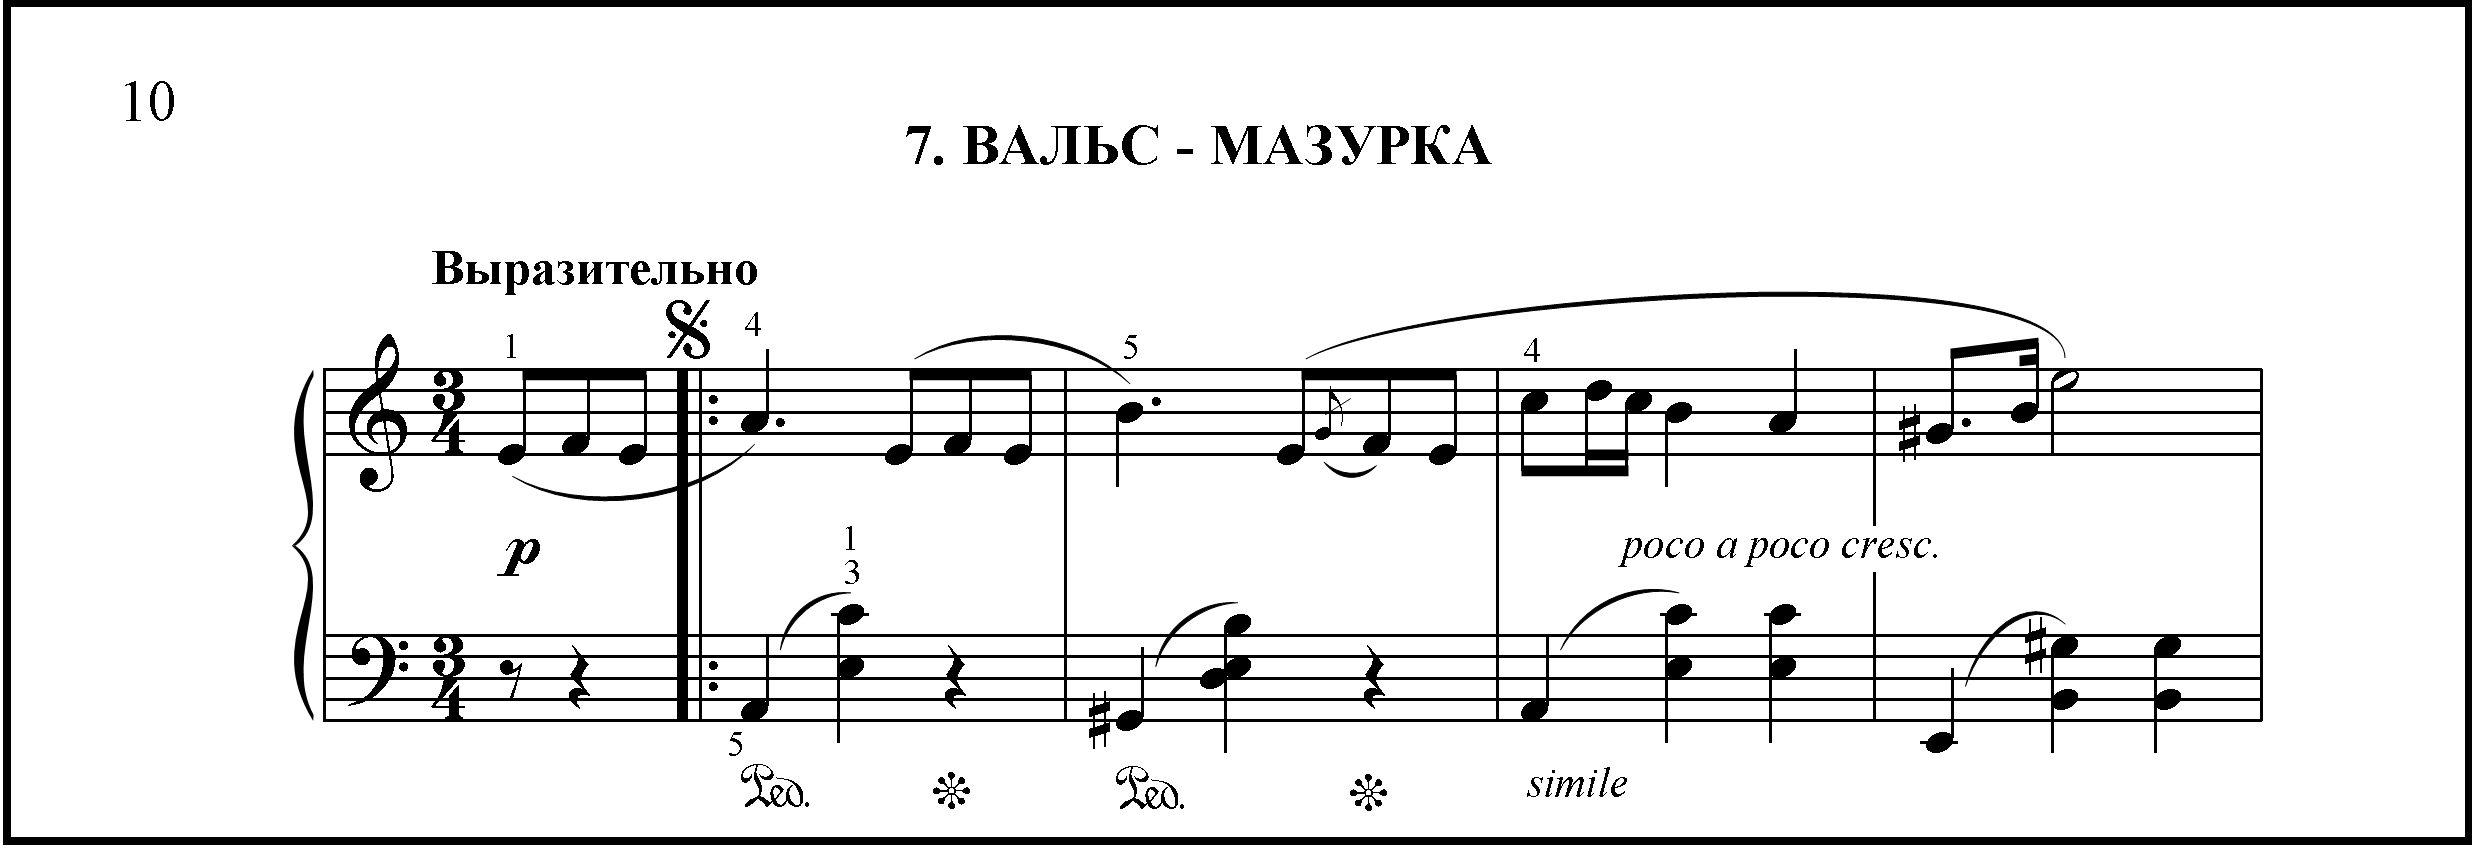 Waltz Mazurka